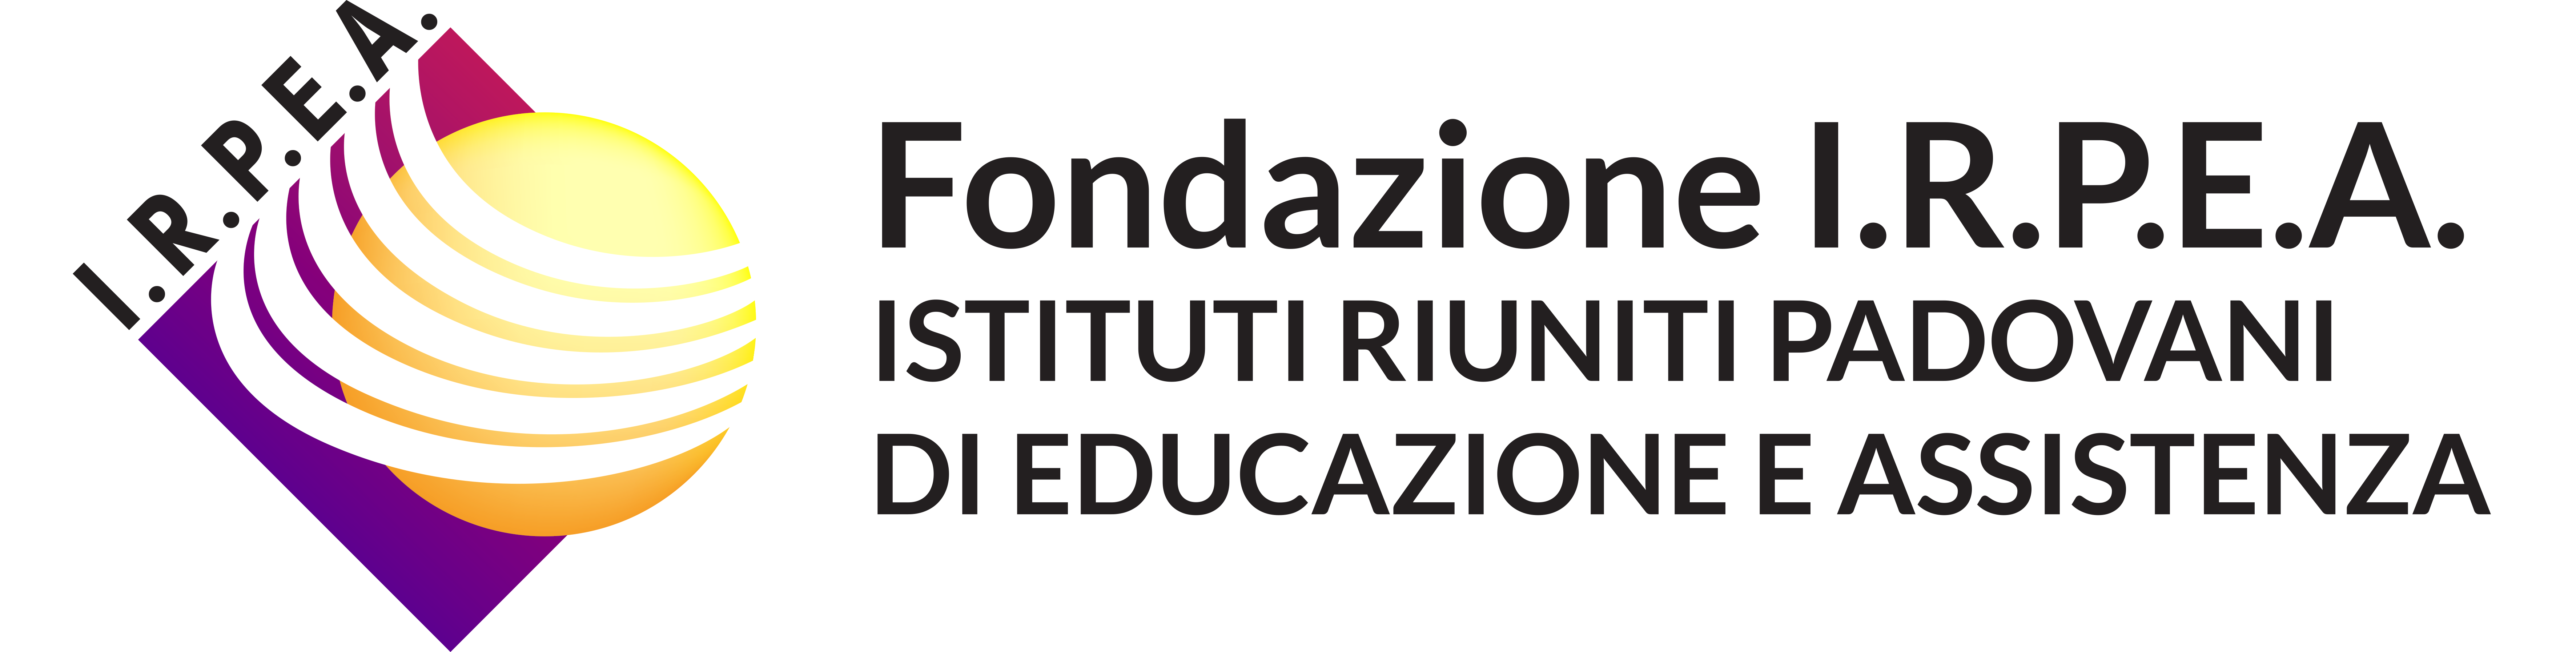 Fondazione IRPEA